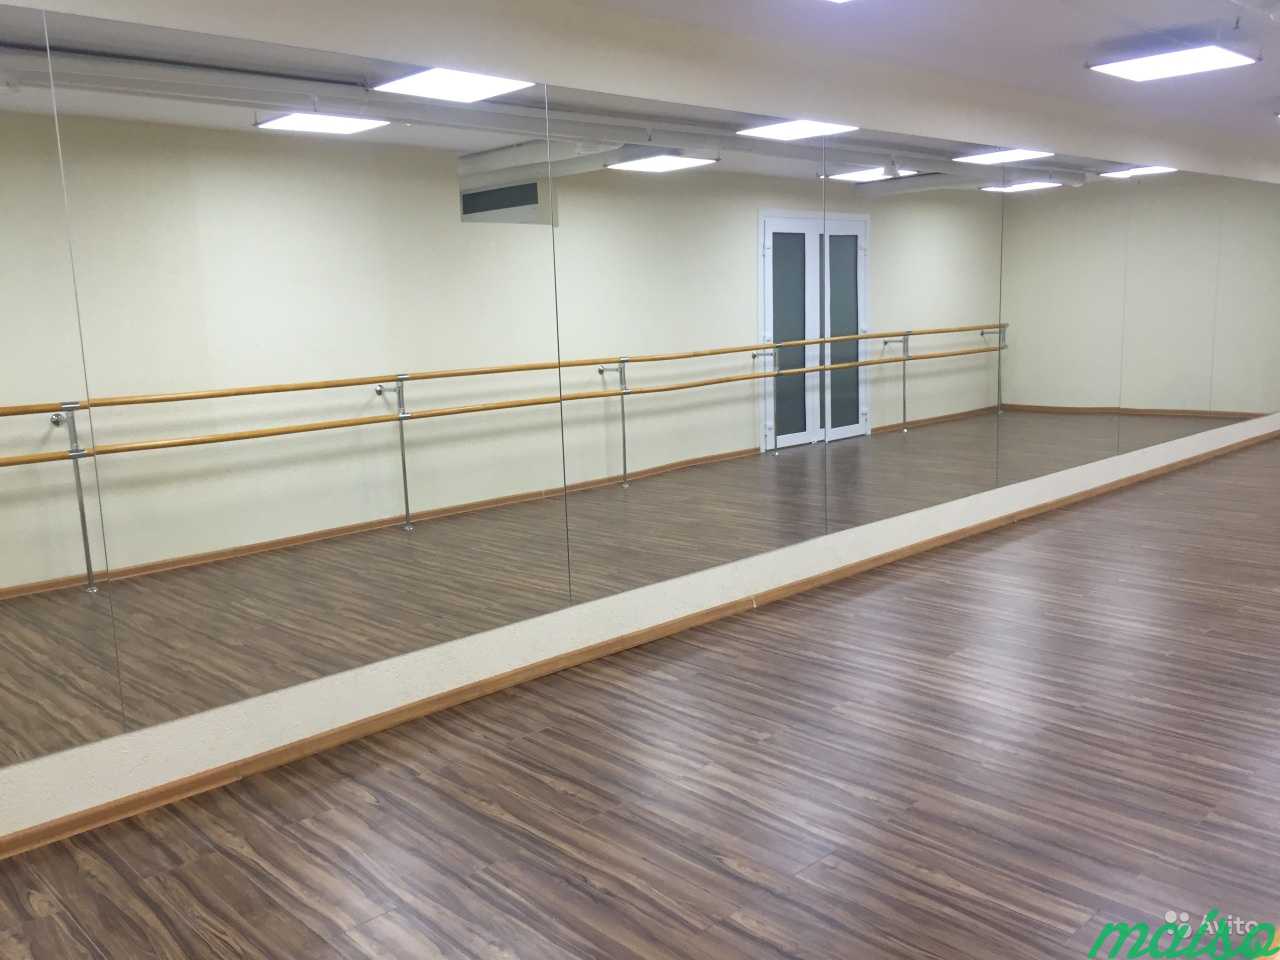 Залы в аренду для танцев, фитнеса, хореографии в Москве. Фото 1